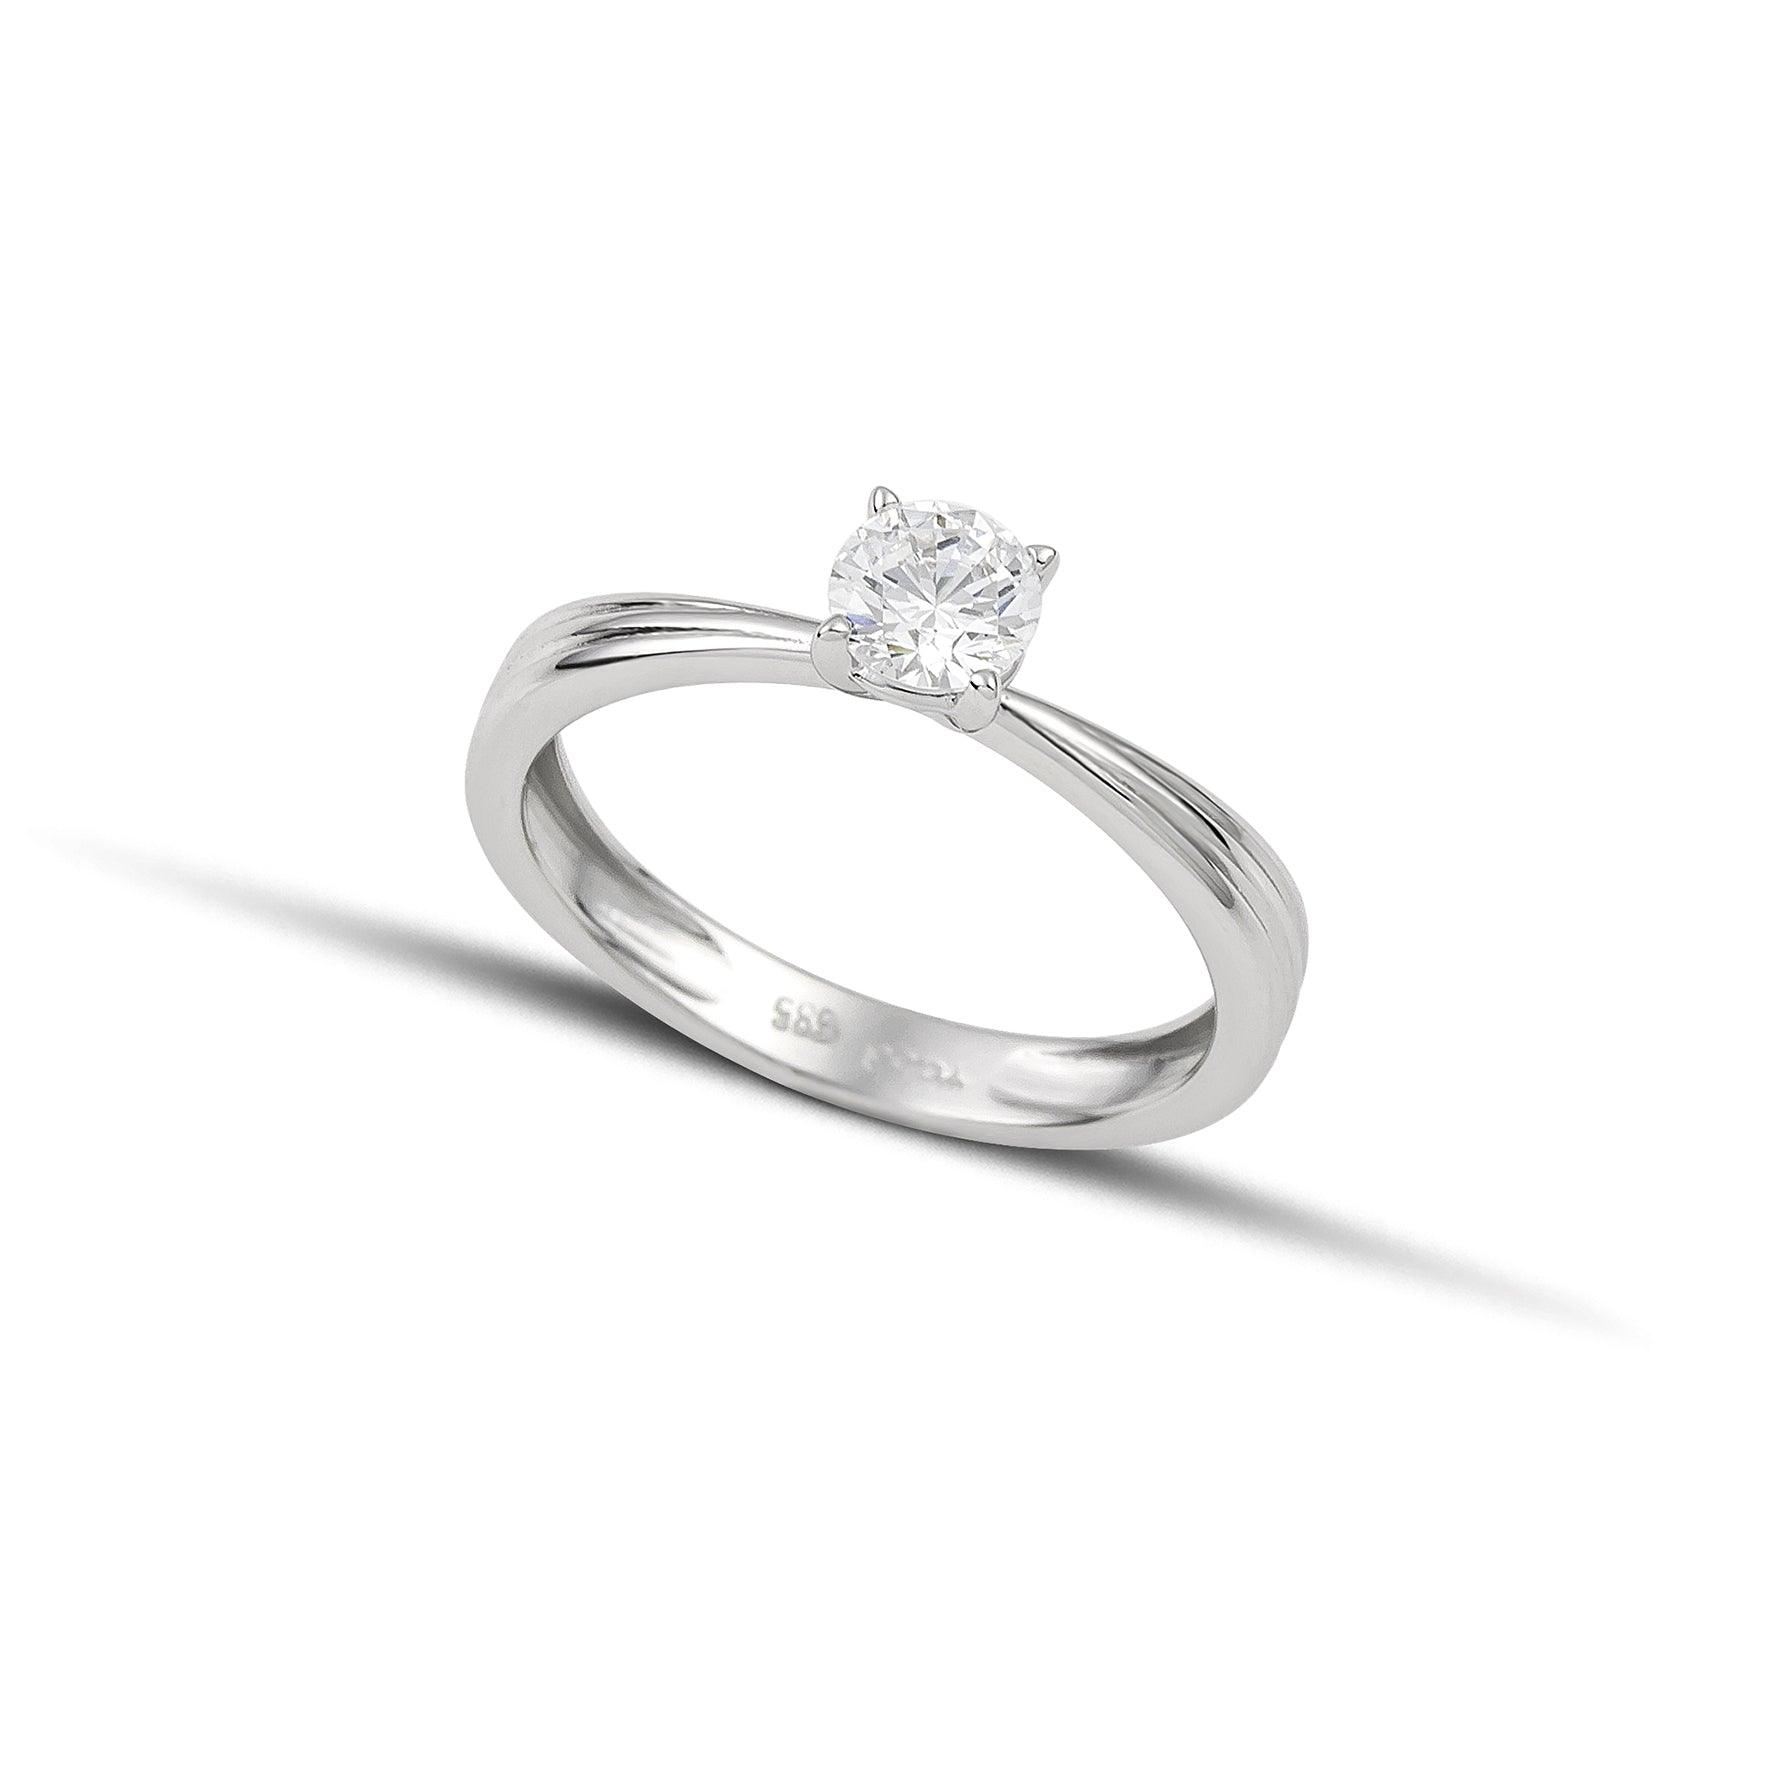 Μονόπετρο δαχτυλίδι με διαμάντι κατασκευασμένο από λευκόχρυσο και καστόνι σε σχήμα "V".